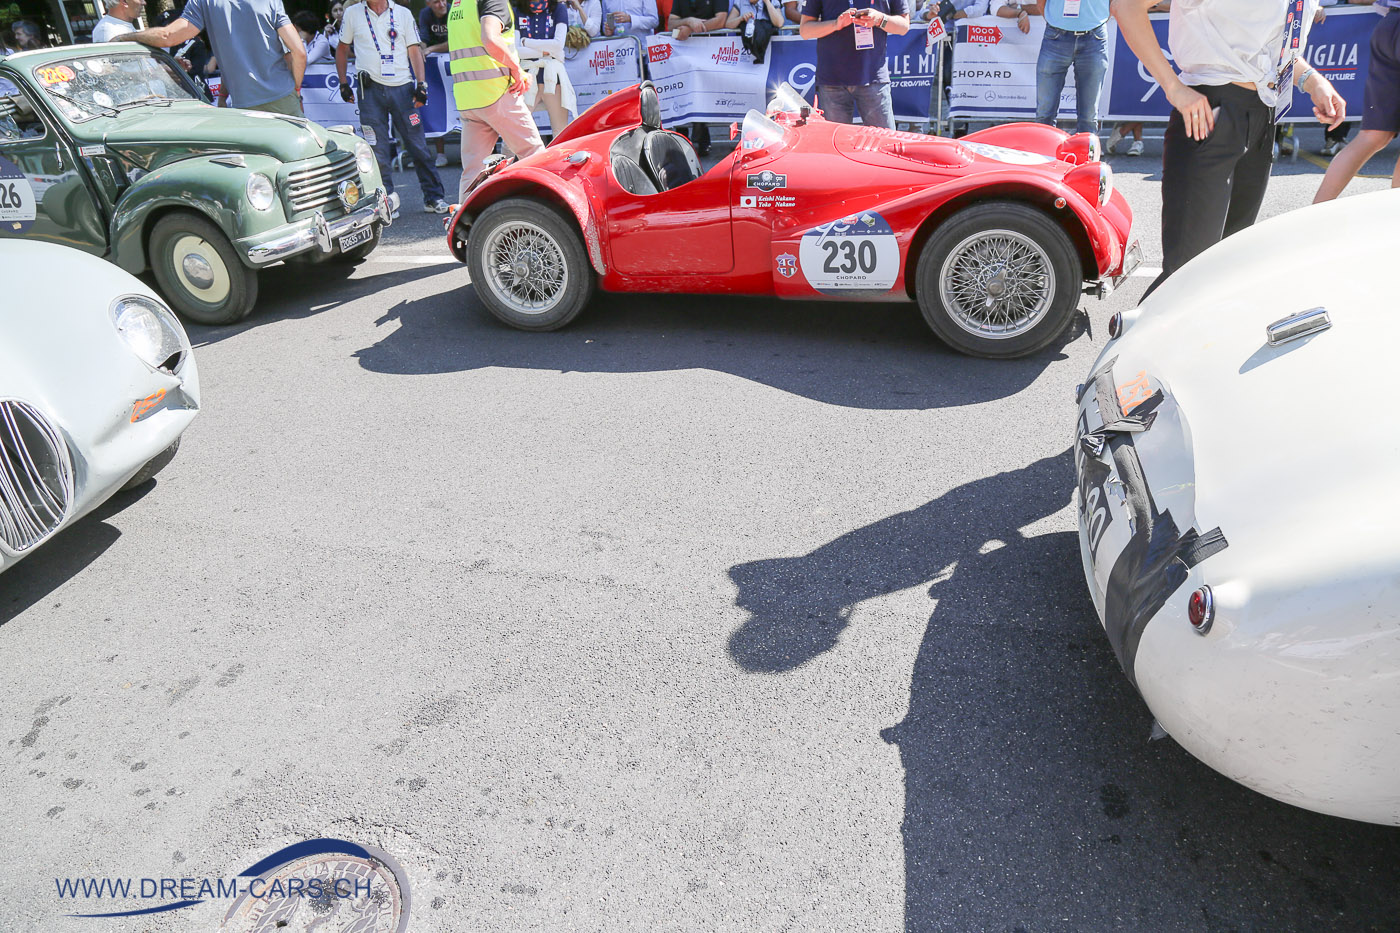 Mille Miglia 2017, 4. Tag, Etappe Parma - Brescia. Zwei Jaguar C-Type. Spuren einer leichten Kollision